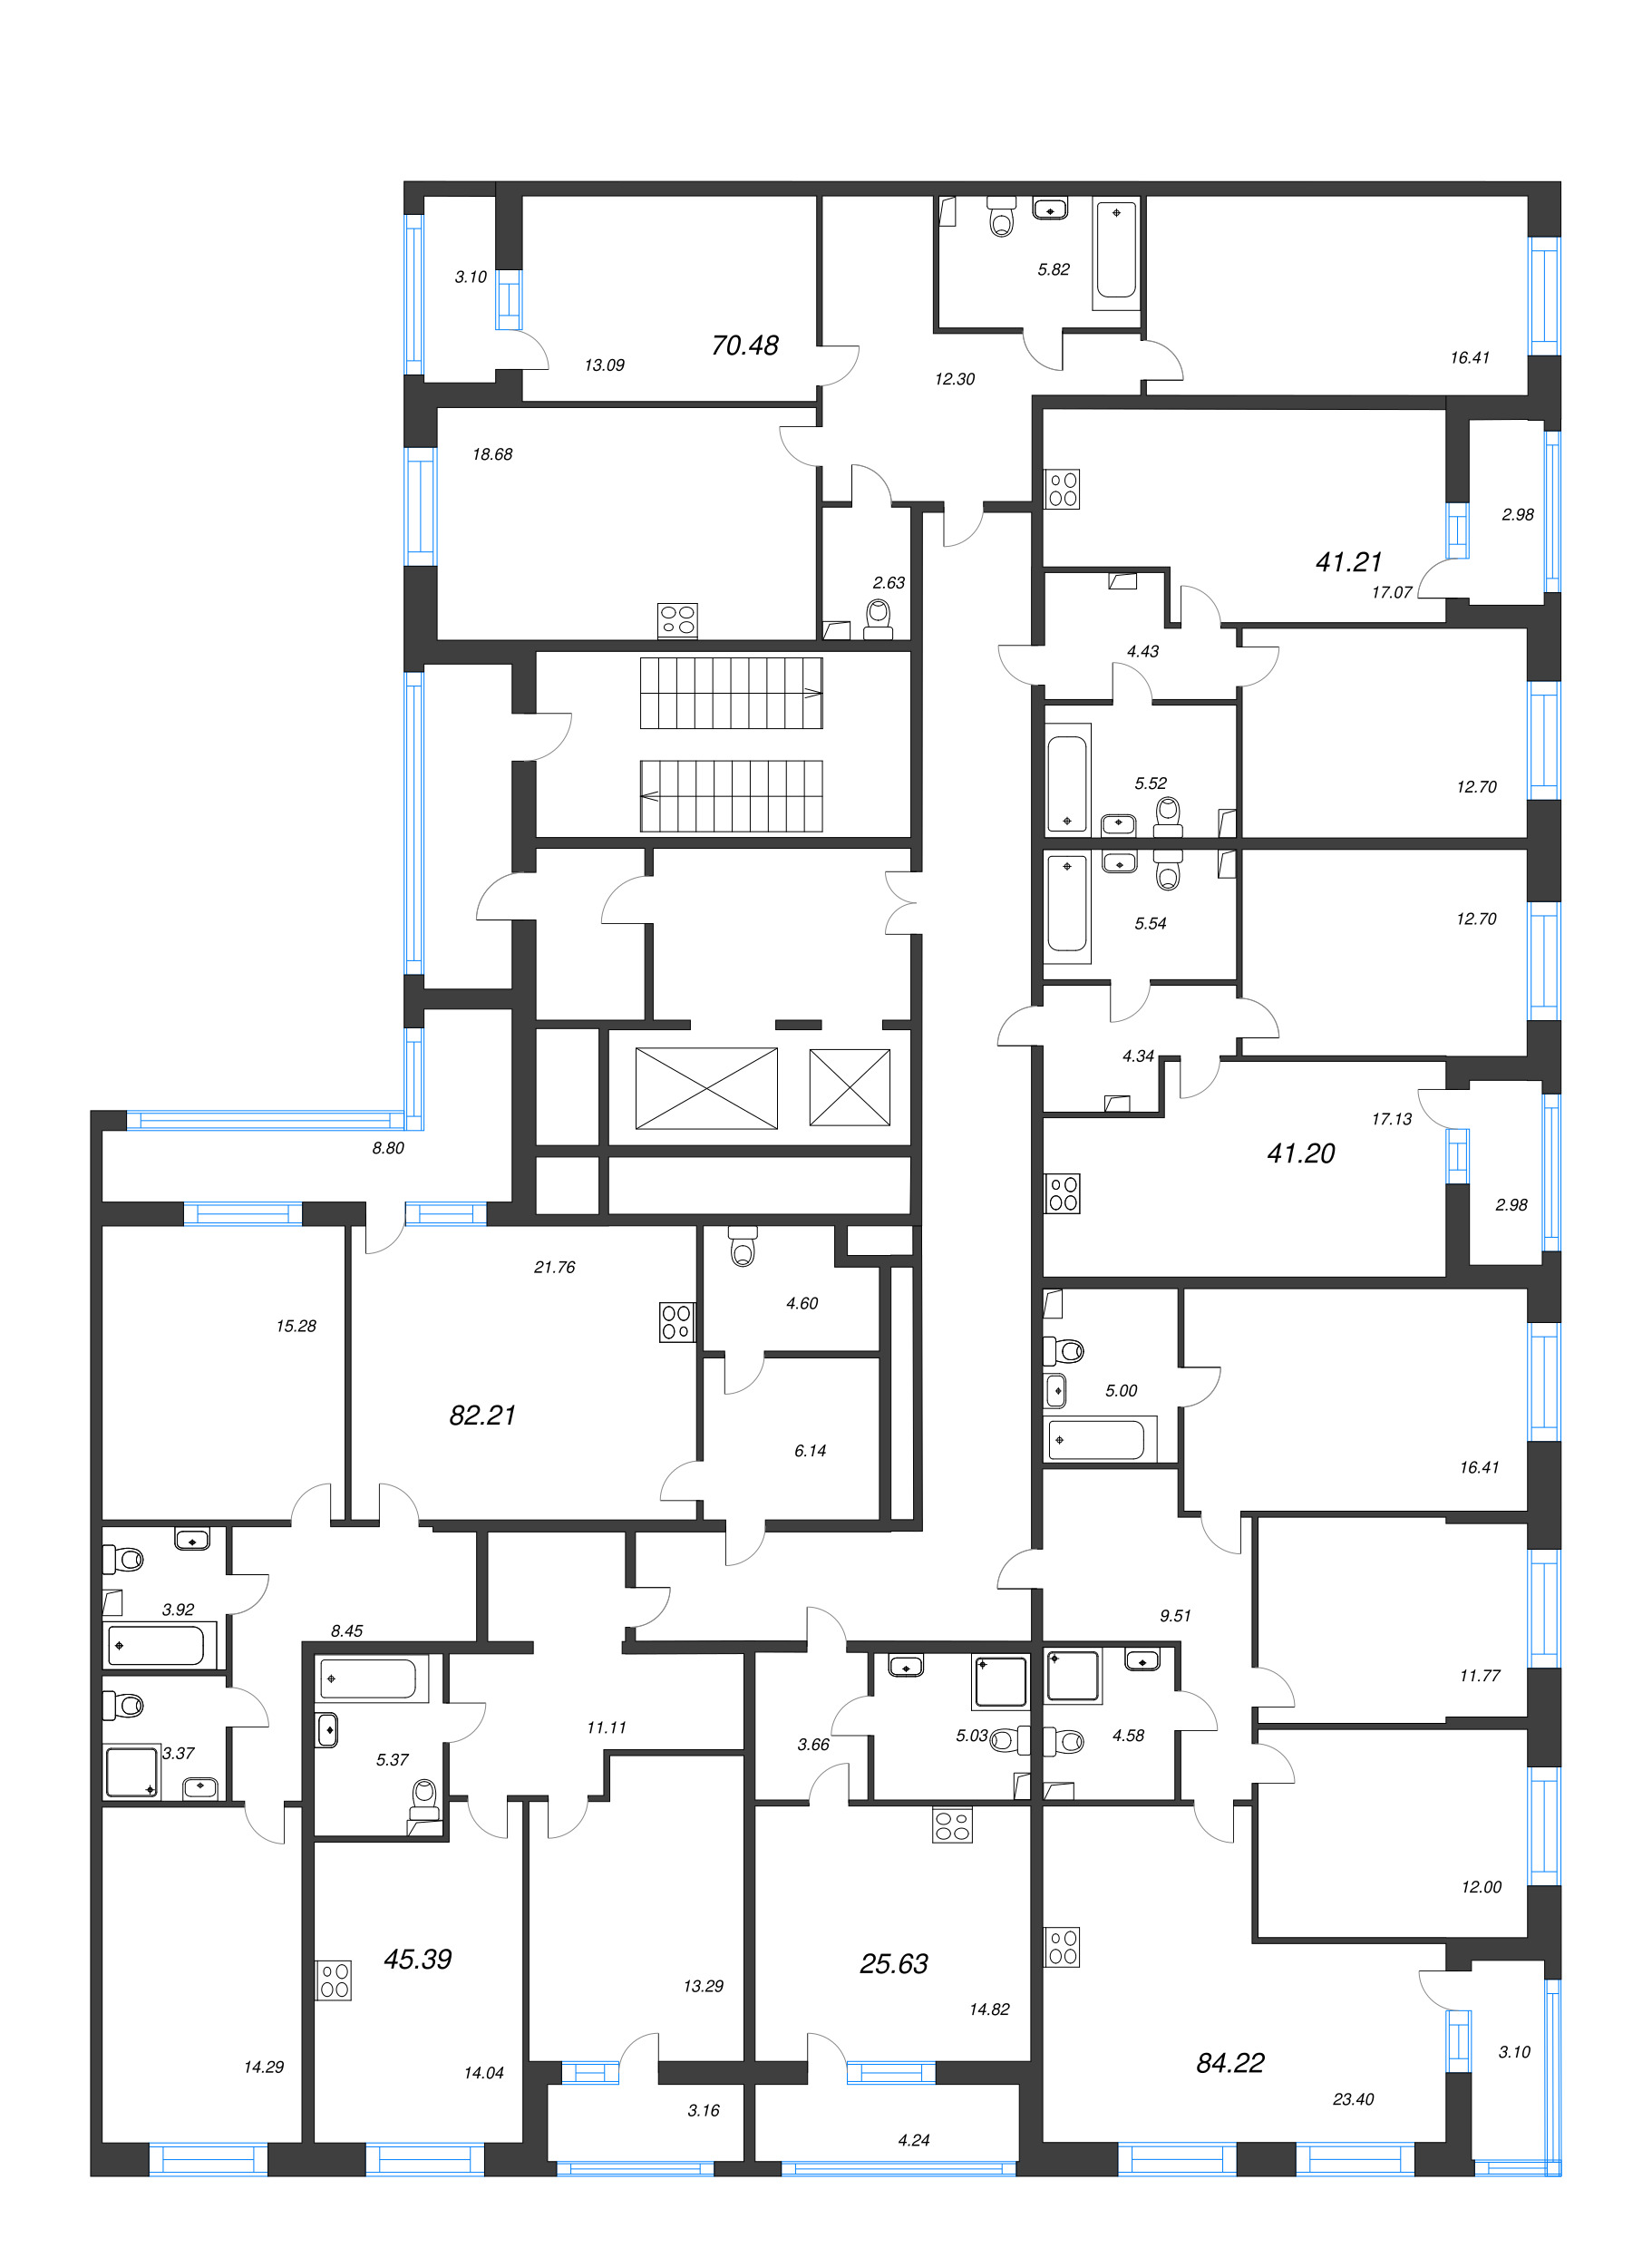 3-комнатная (Евро) квартира, 70.48 м² в ЖК "Аквилон Leaves" - планировка этажа